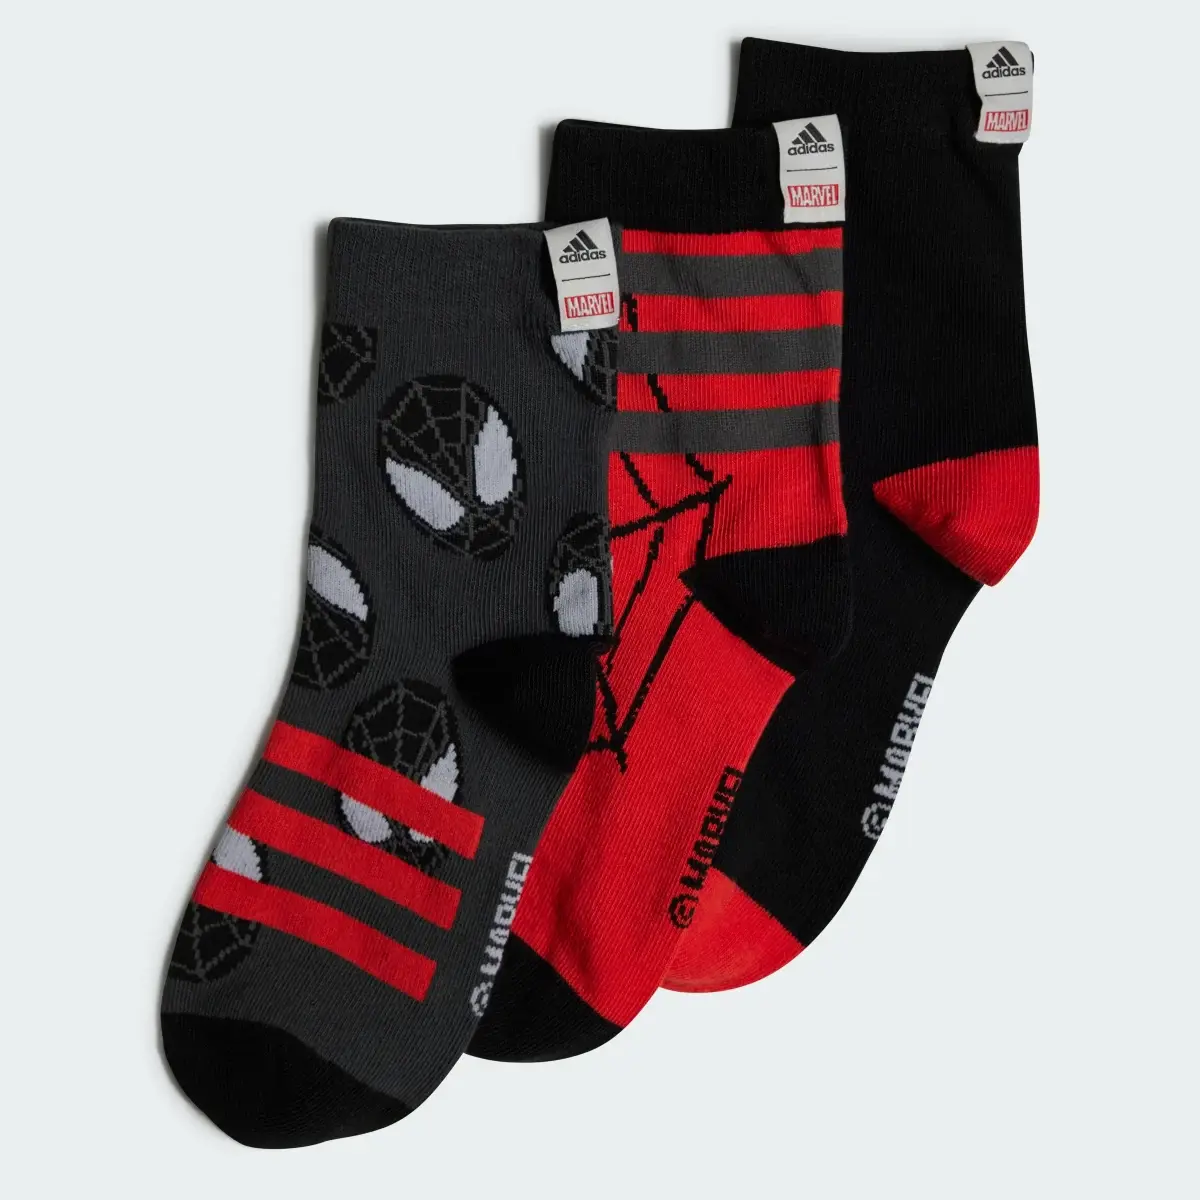 Adidas Meias Marvel Spider-Man — 3 pares. 1